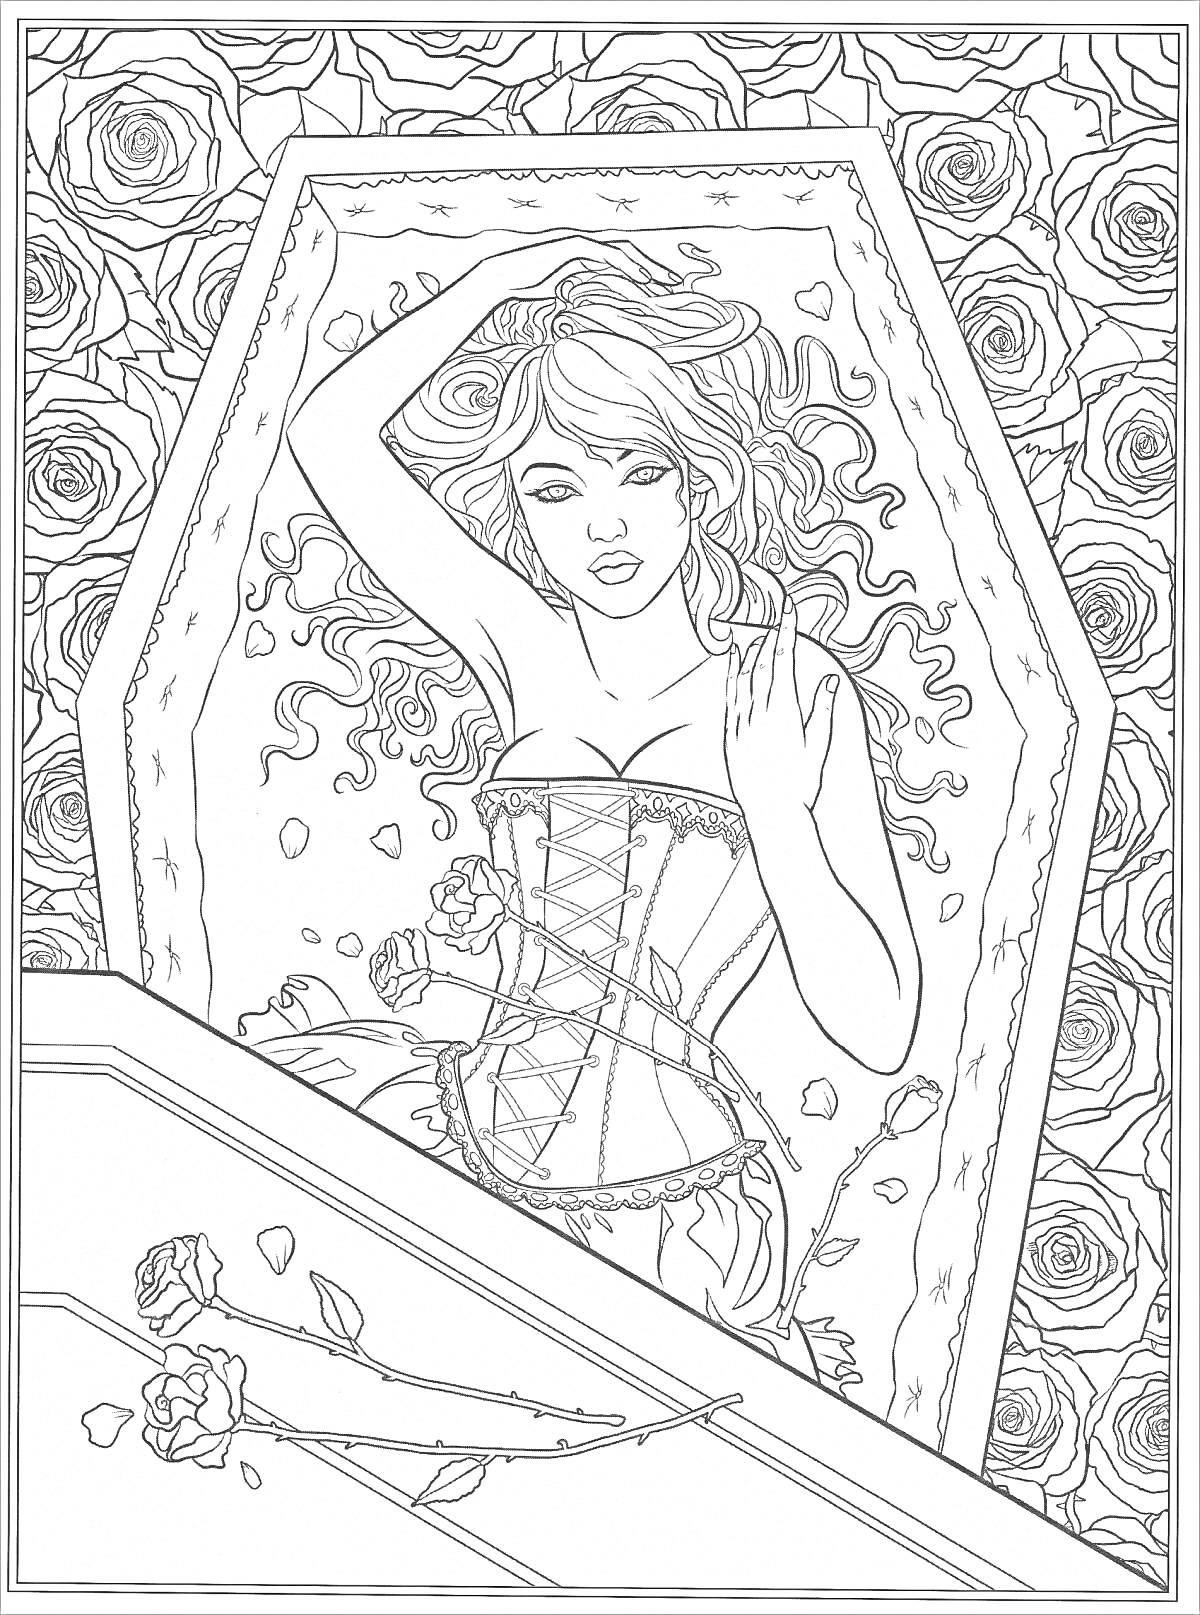 Раскраска Девушка в корсете в гробу на фоне роз